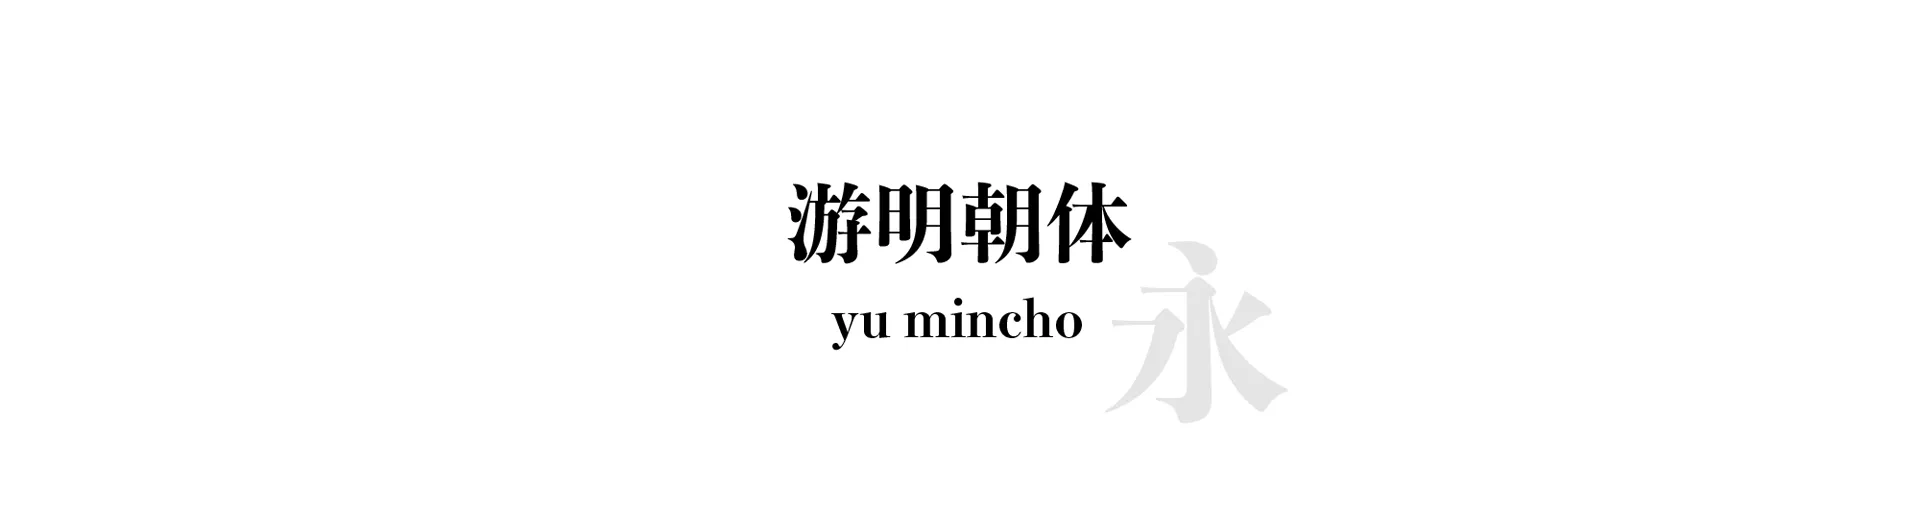 yu mincho